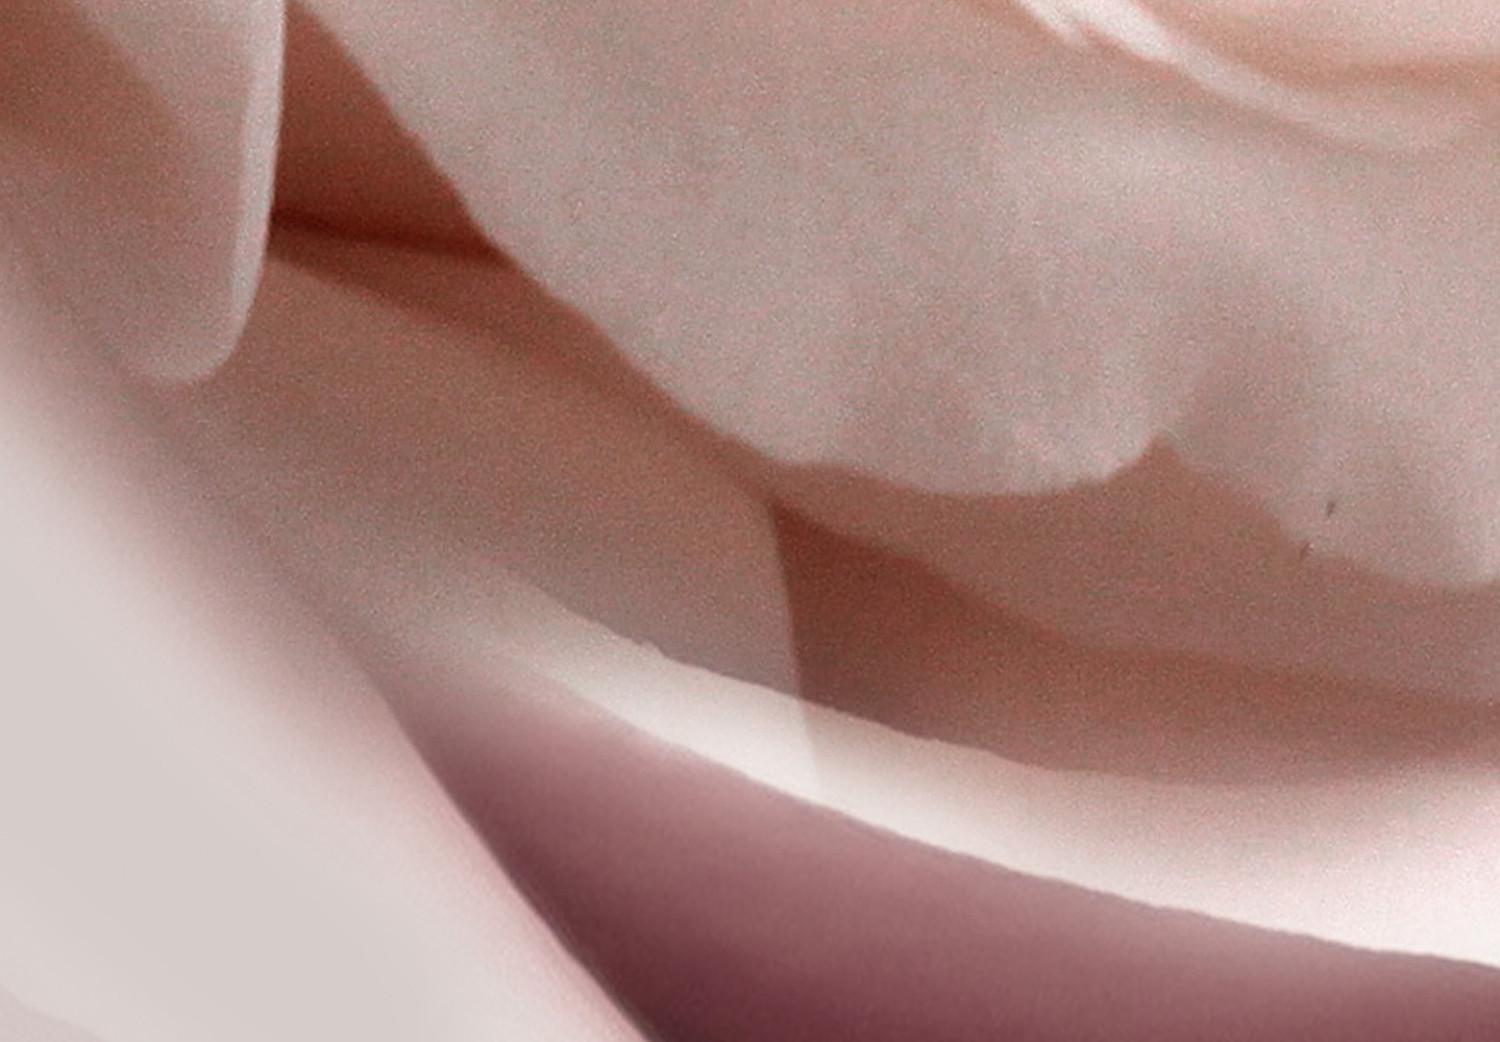 Cuadro moderno Encanto pastel (1 parte) - rosa floreciente en la naturaleza